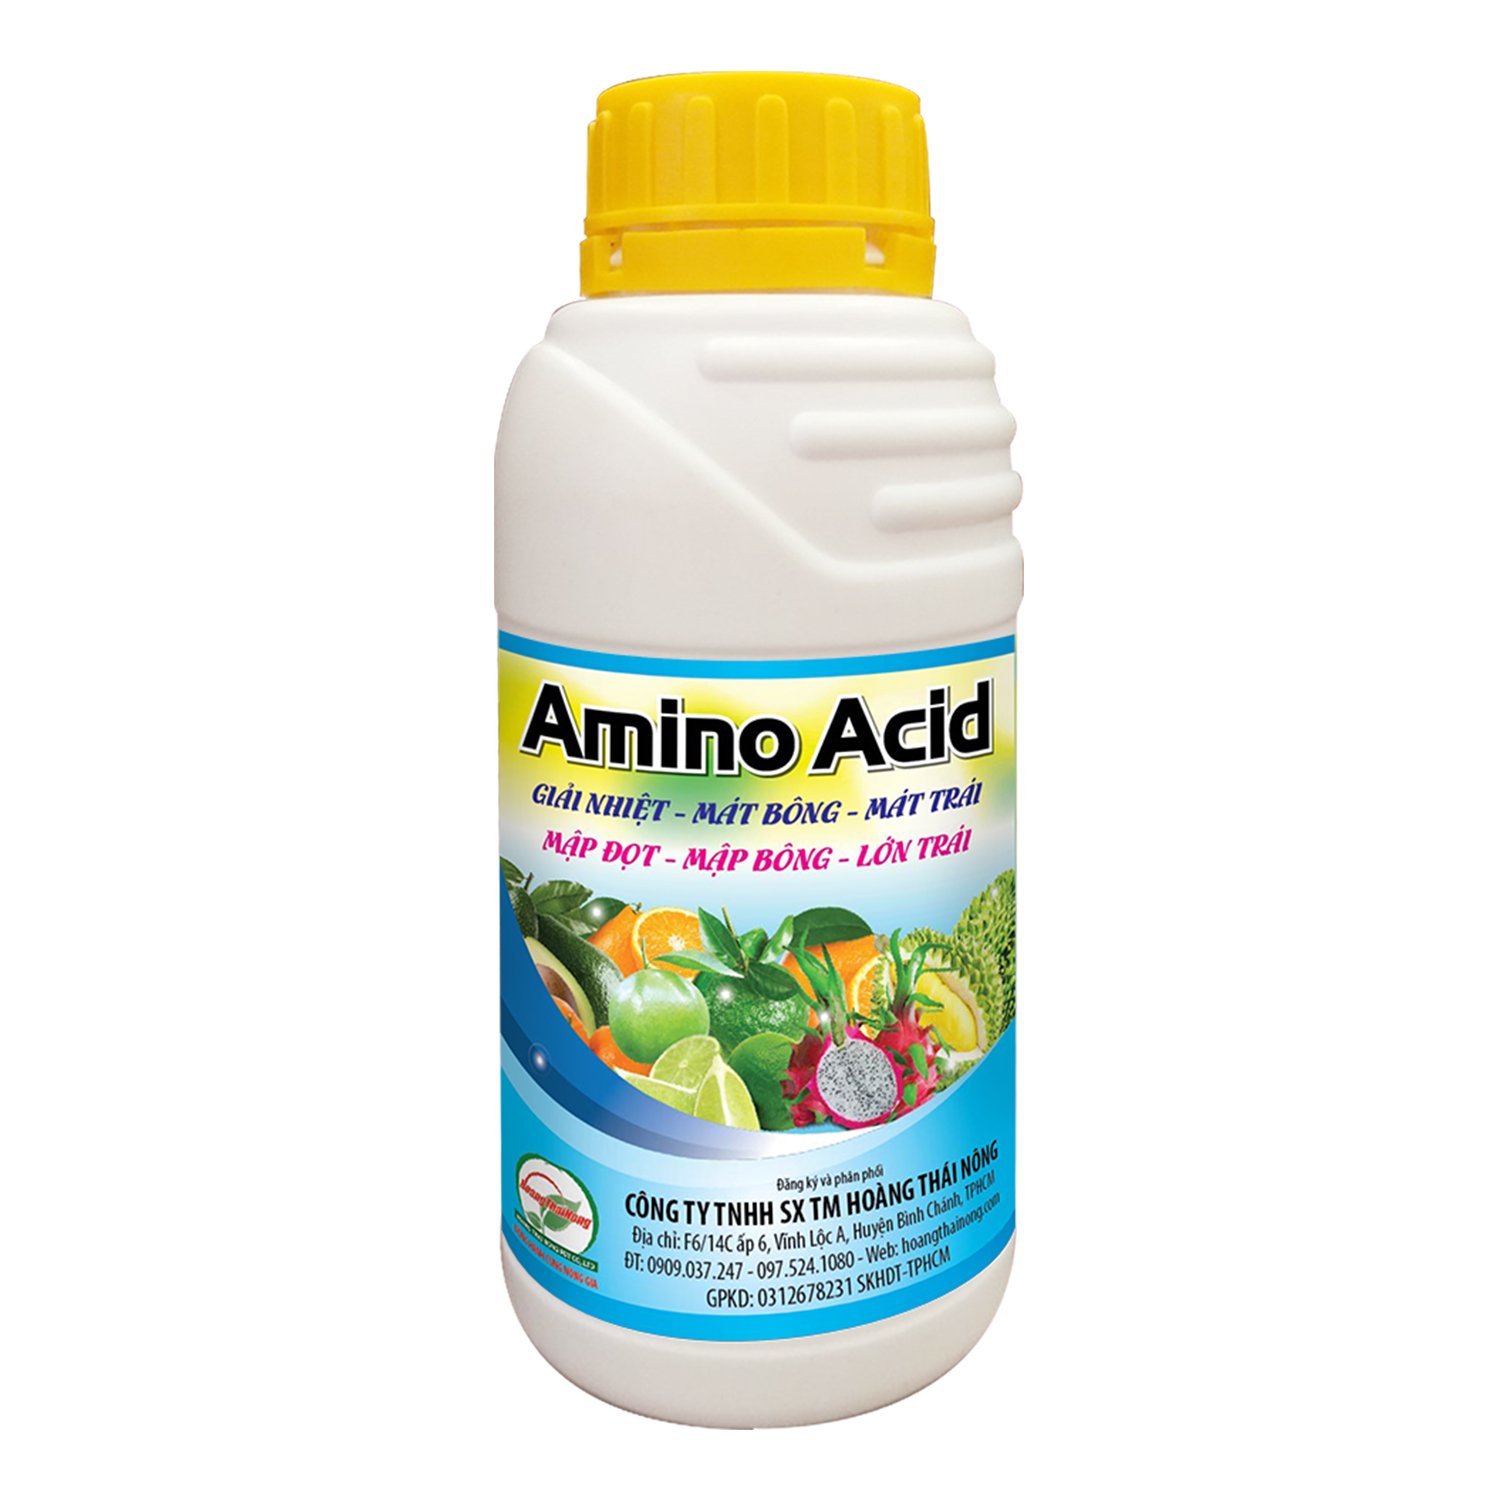 Amino Acid 500ml - Kích thích mập thân, mập đọt